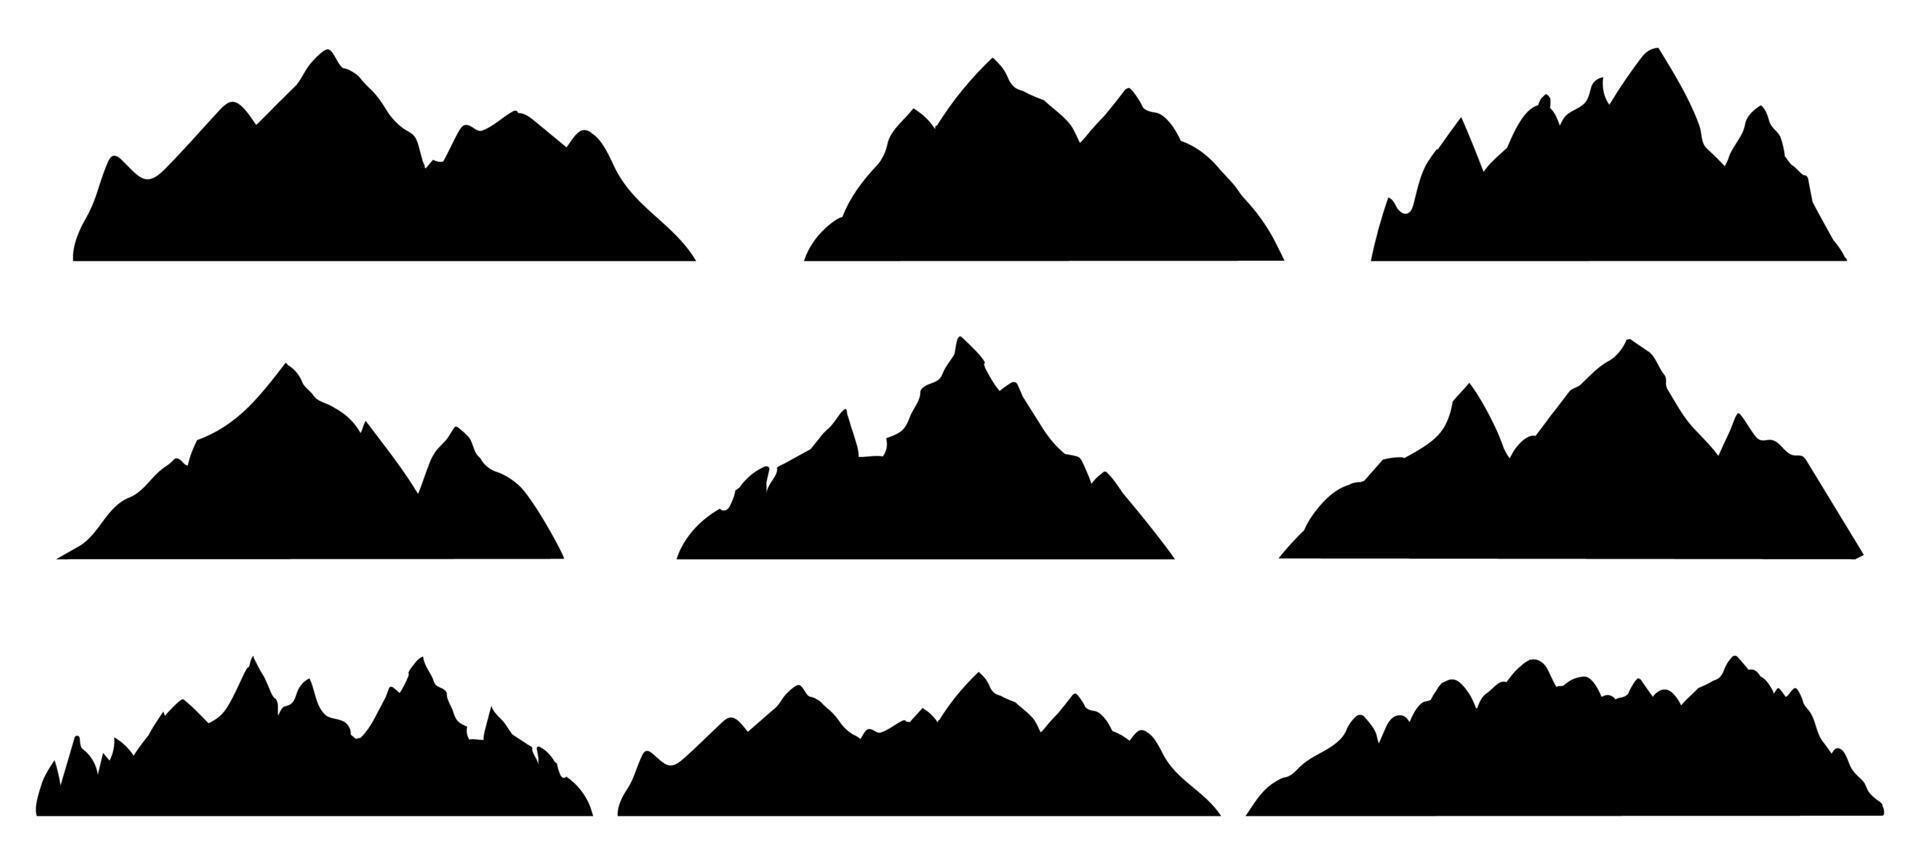 Montagne silhouette. rocheux intervalle paysage forme. randonnée montagnes pics, collines et falaises. escalade pierre monter abstrait contour vecteur ensemble